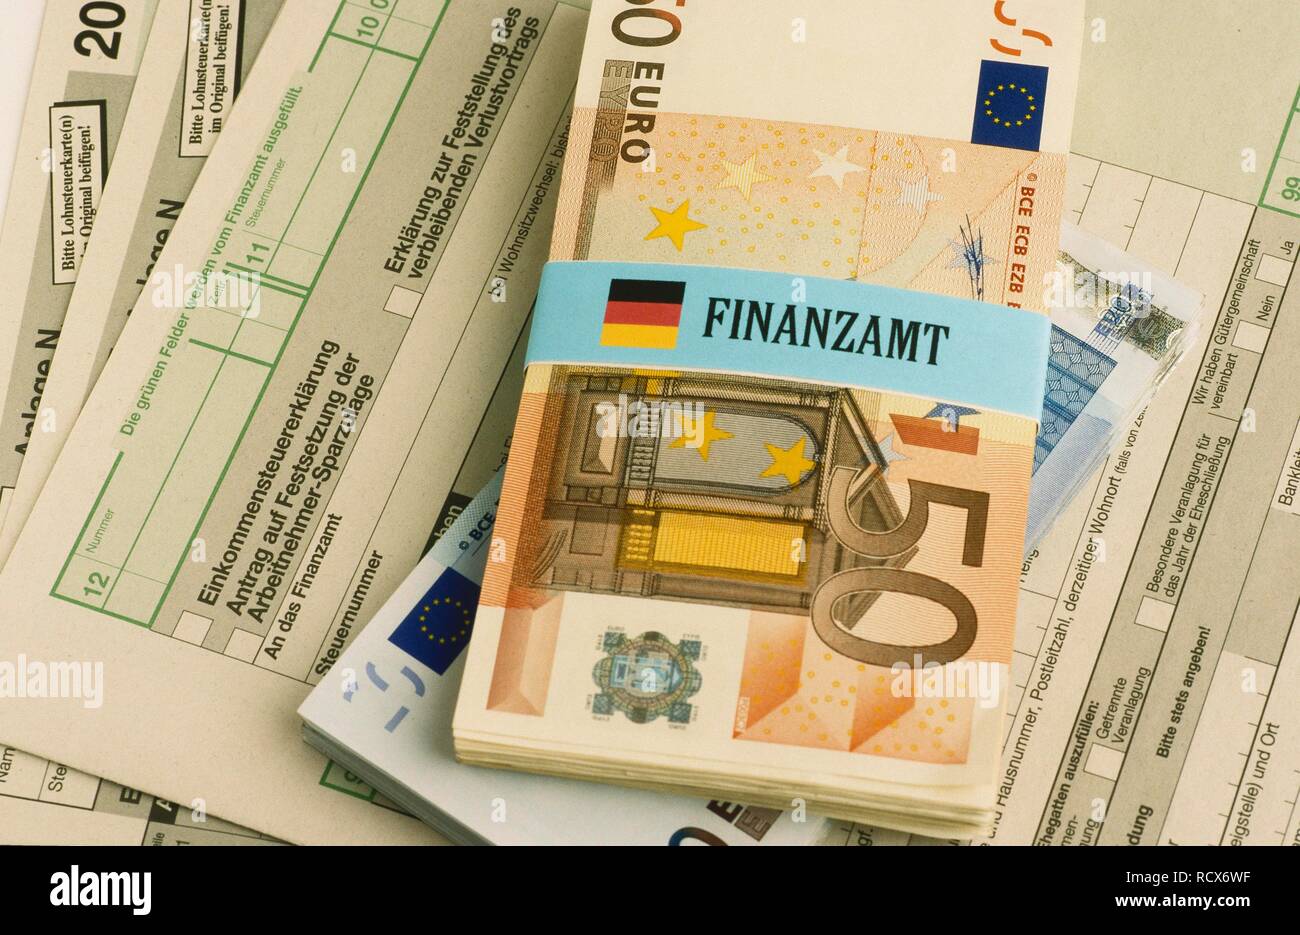 Bündel von Euro-banknoten gebunden mit einem Etikett für Finanzamt, Deutsch für Finanzamt, Einkommenssteuererklärung Formulare Stockfoto